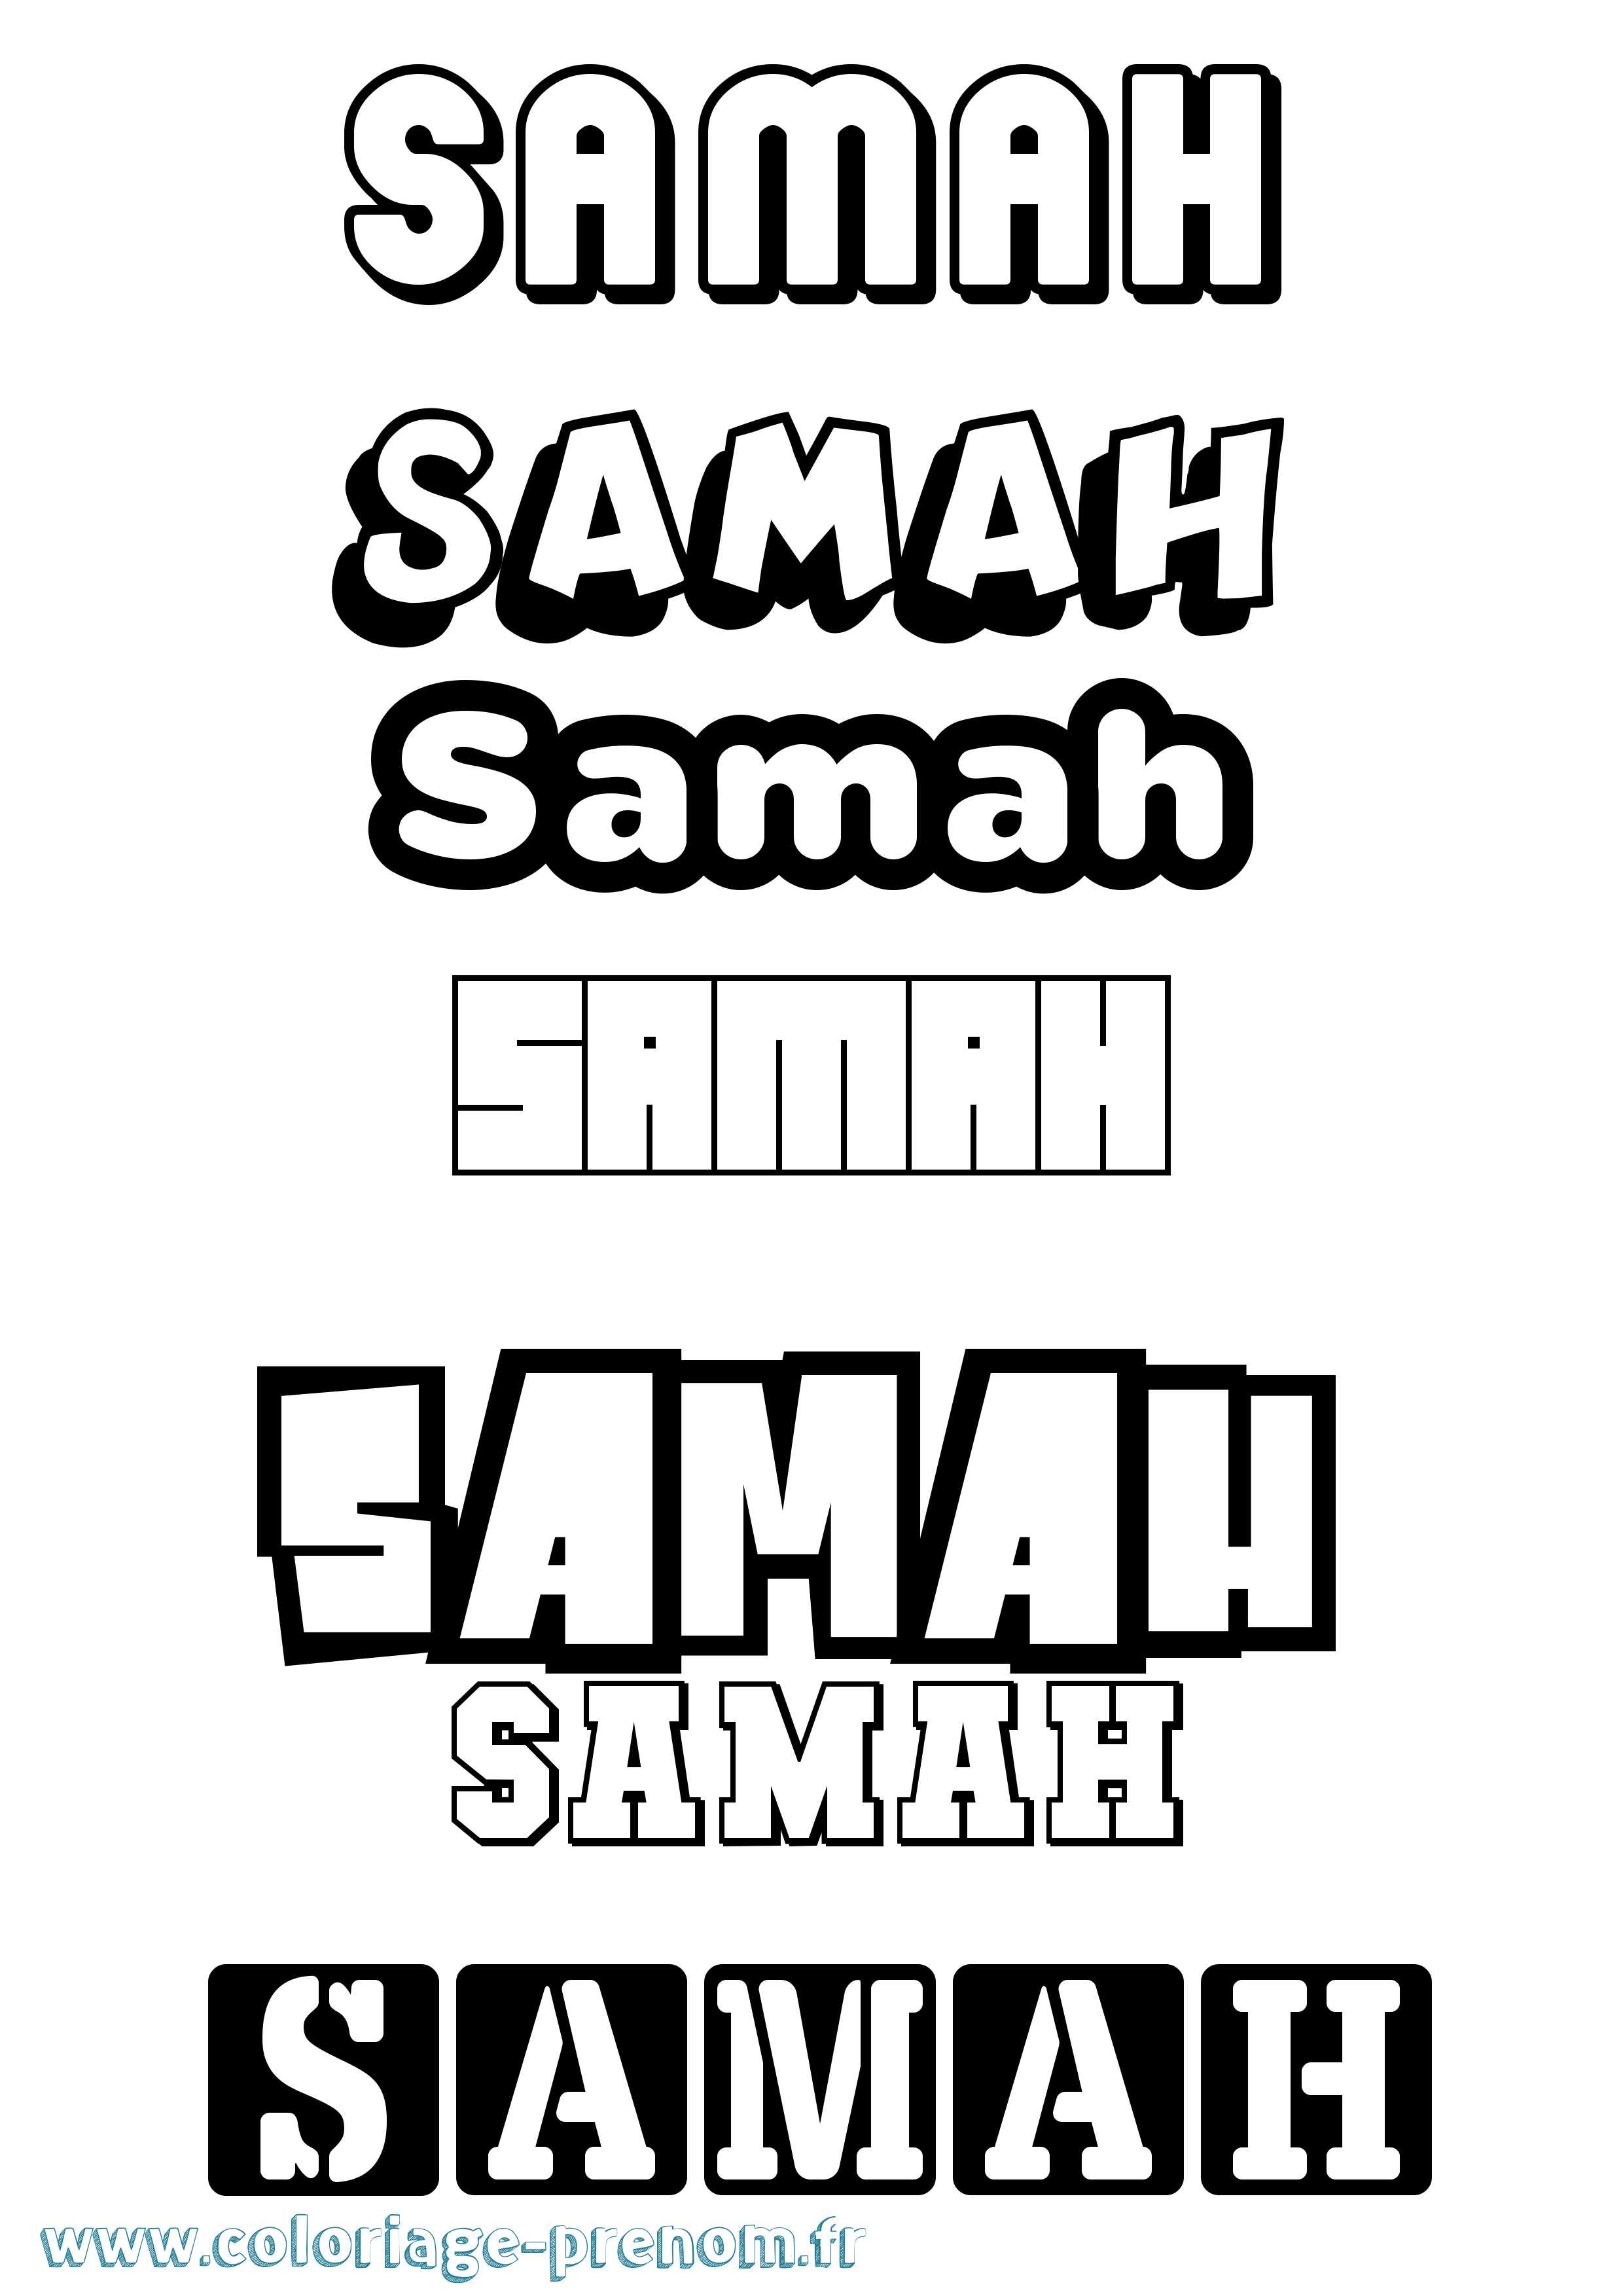 Coloriage prénom Samah Simple